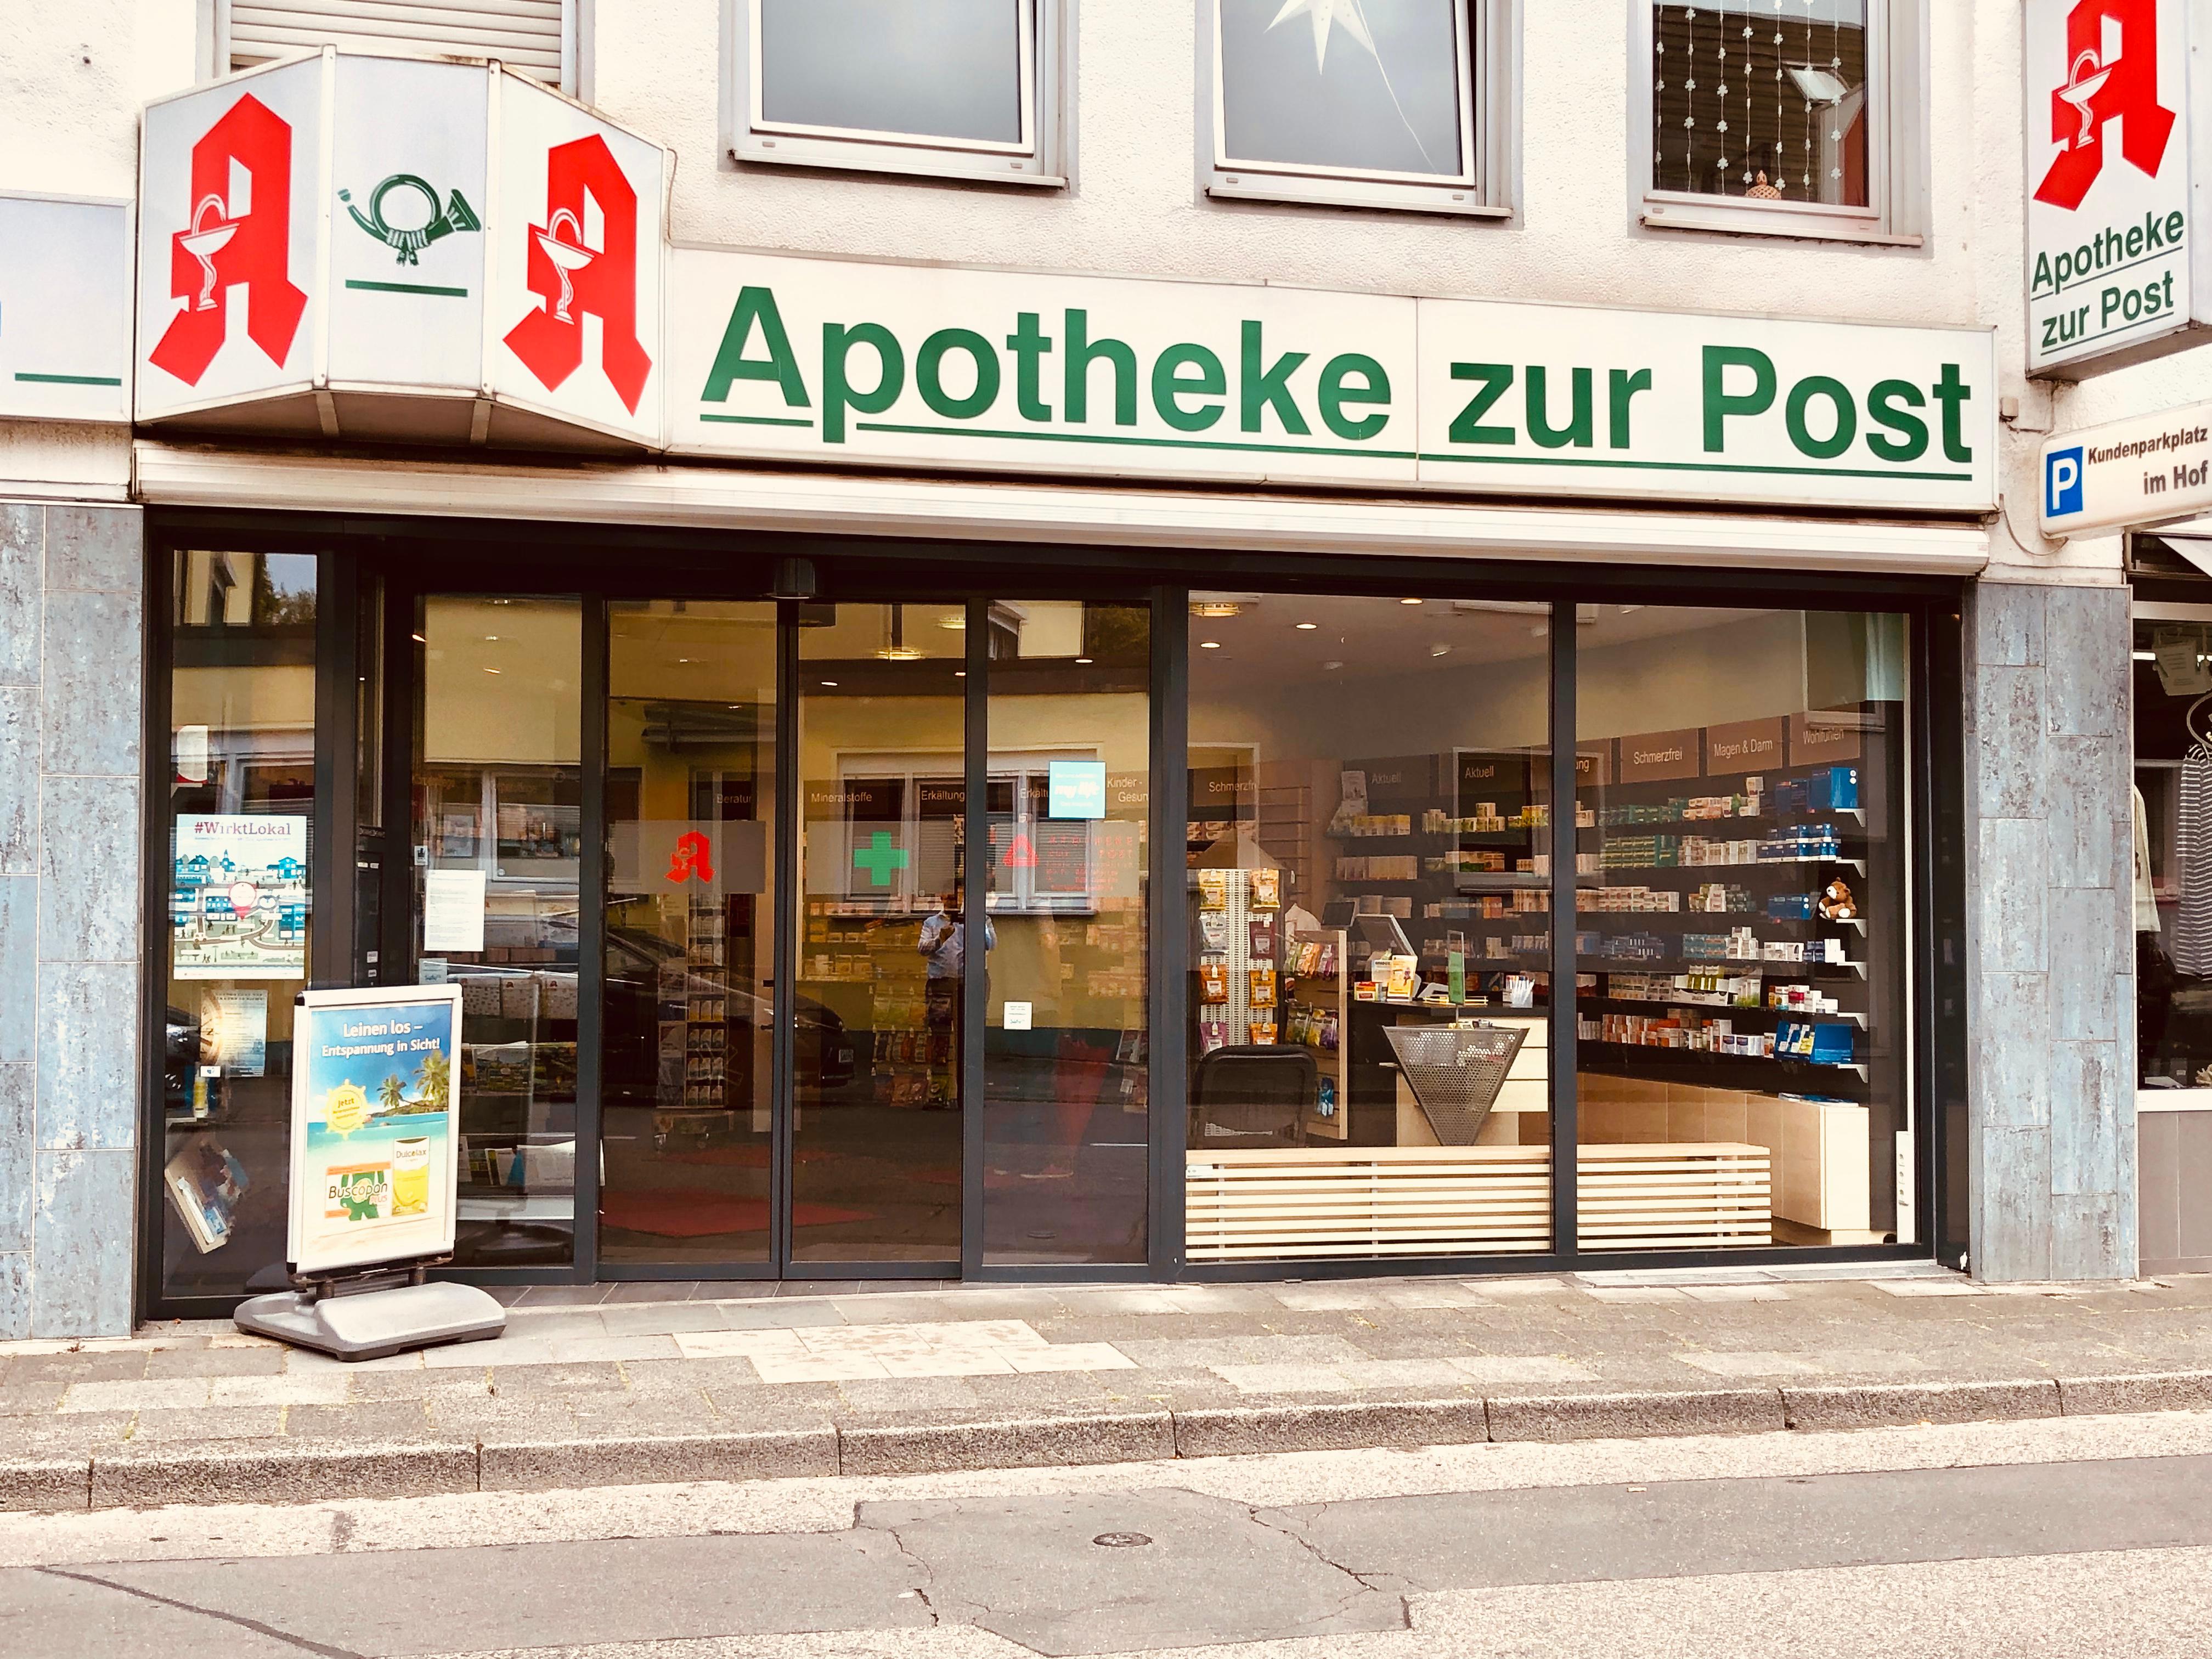 Apotheke zur Post, Berliner Straße 910 in Köln